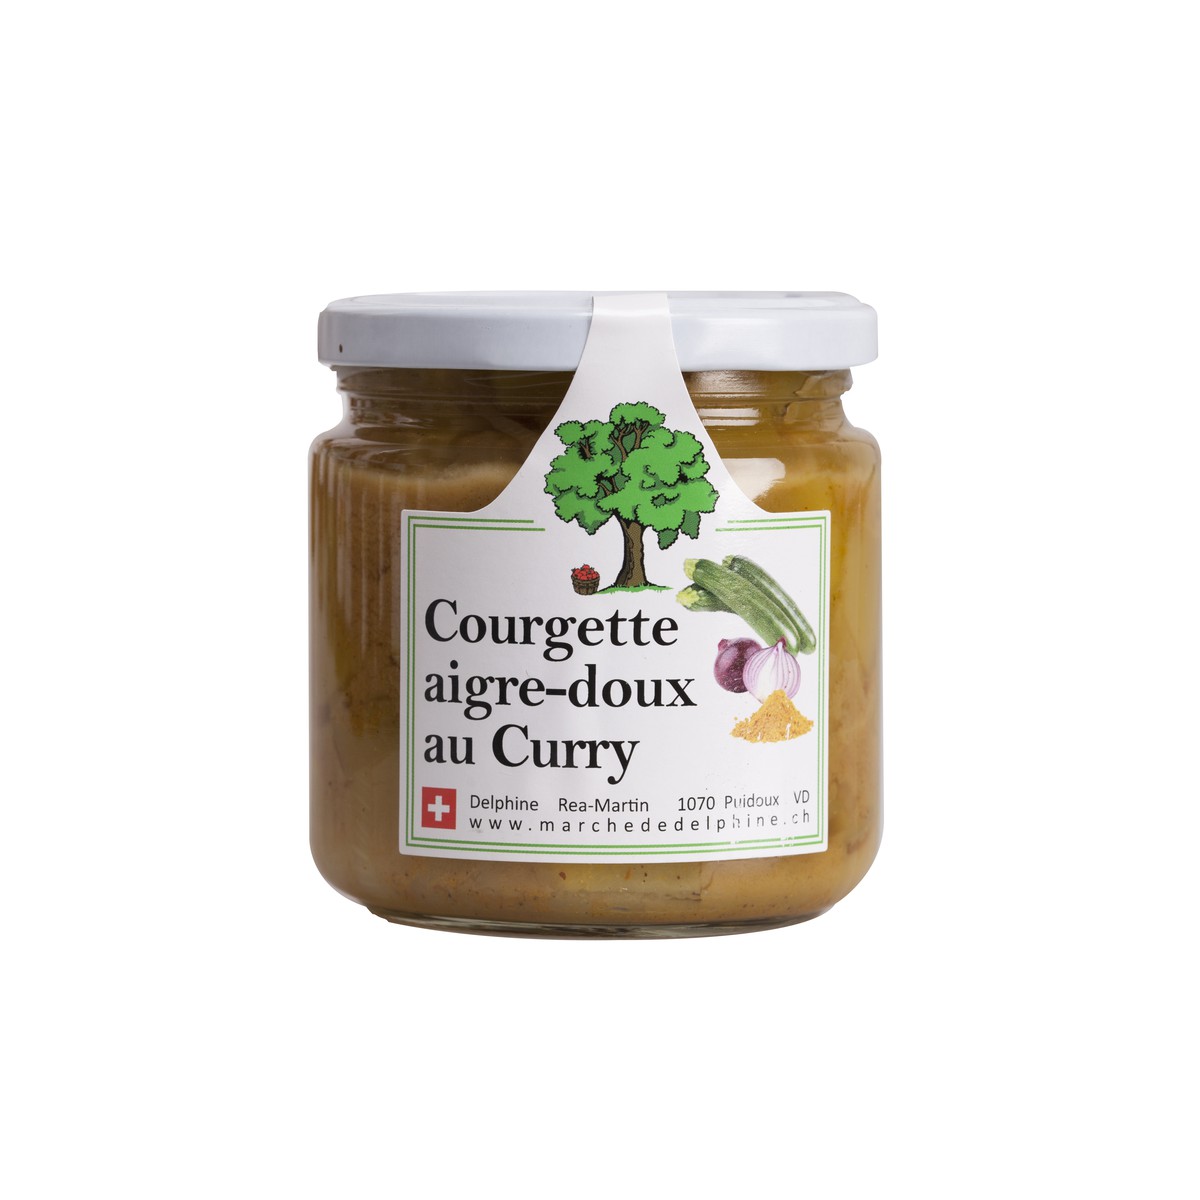 Le marché de Delphine  Courgette aigre-doux au Curry 420g  420g